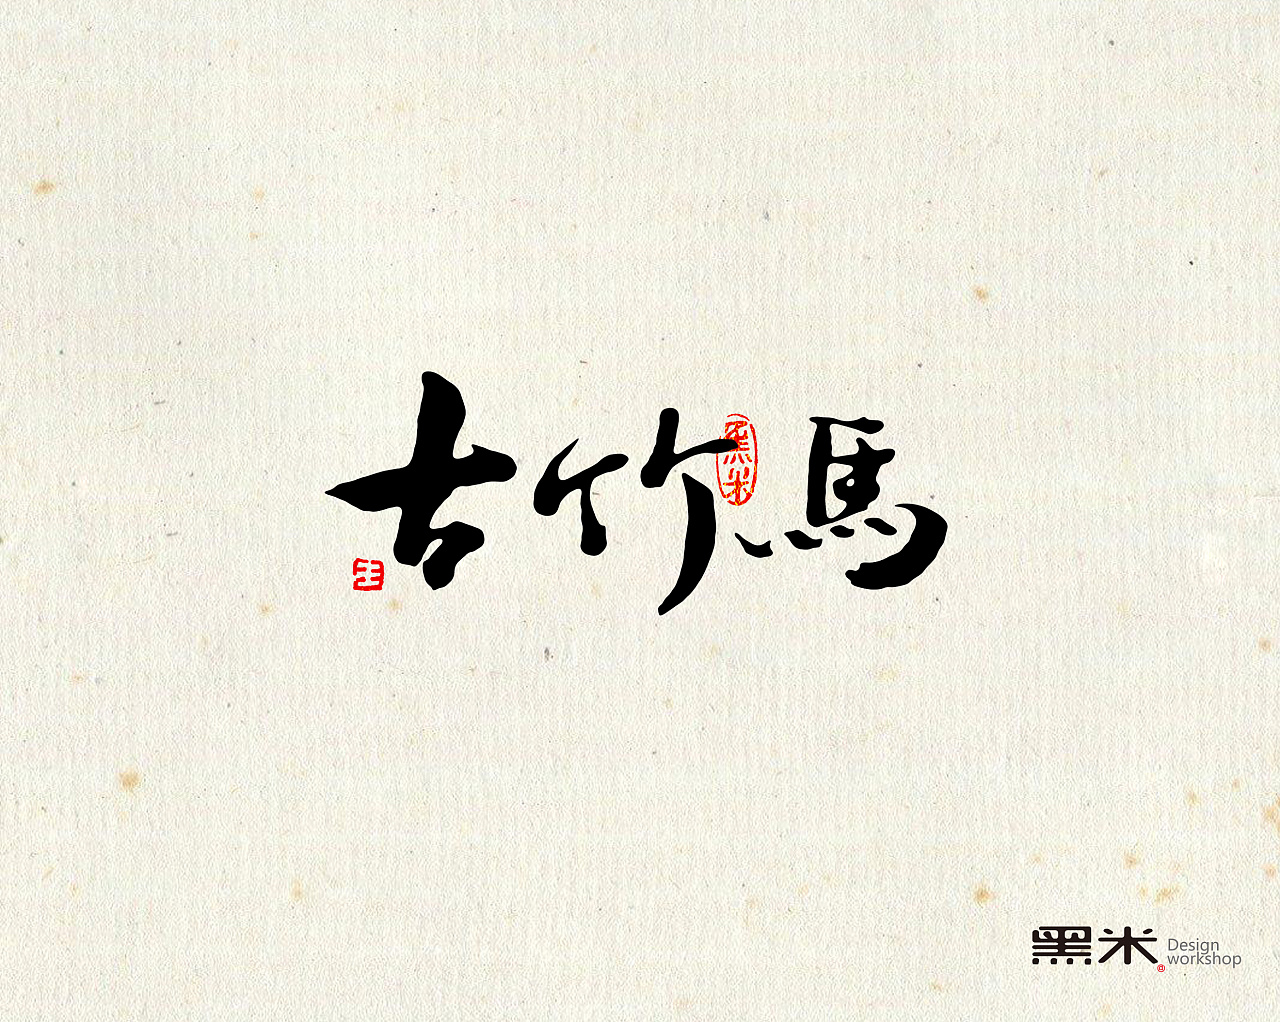 字体设计 中国传统文化 词牌名之二  ----古竹马